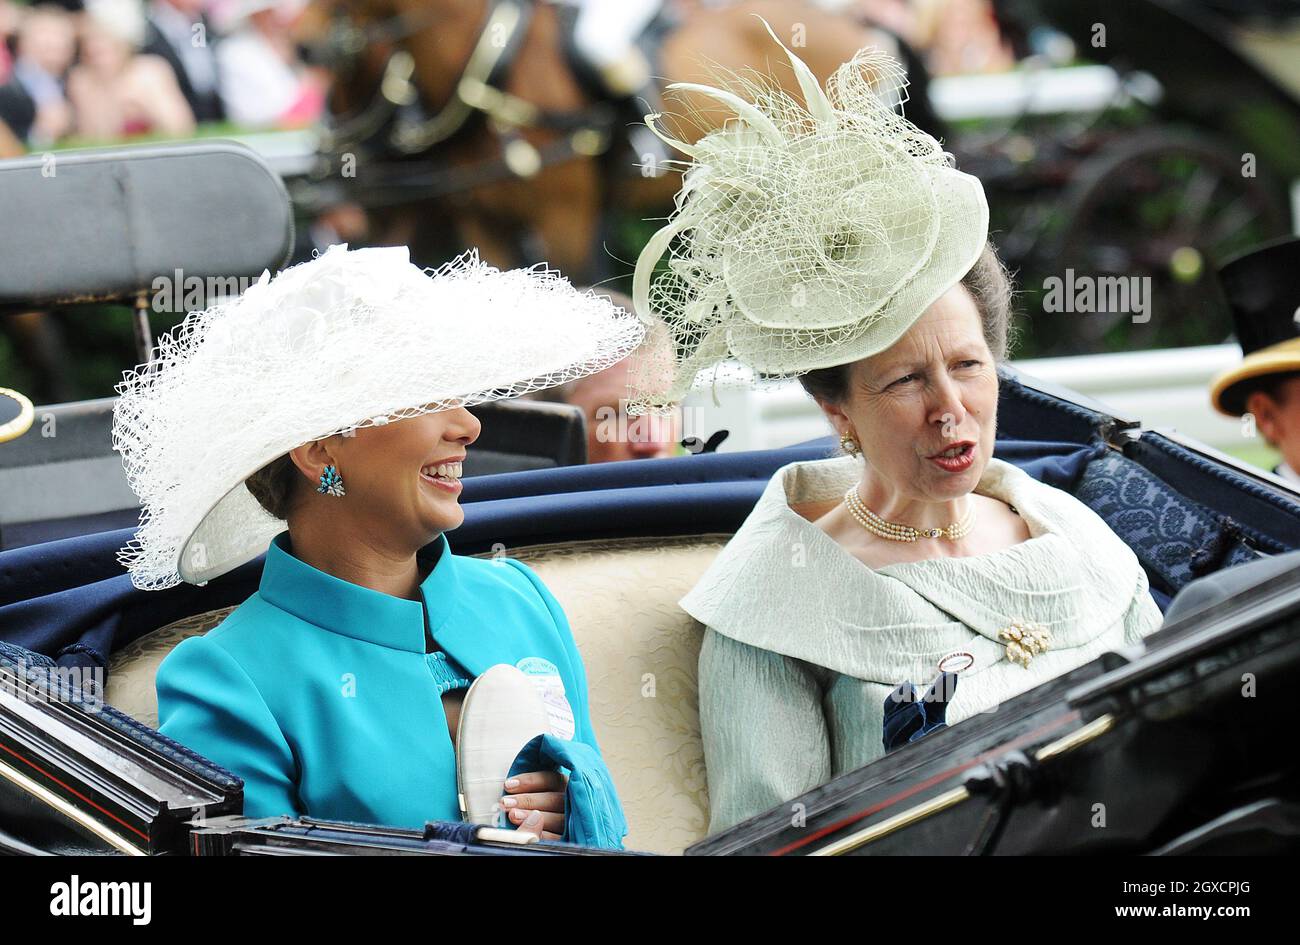 Prinzessin Anne, Prinzessin Royal und Prinzessin Haya Bint Al Hussein nehmen am Ladies Day of Royal Ascot auf der Pferderennbahn Ascot Teil Stockfoto